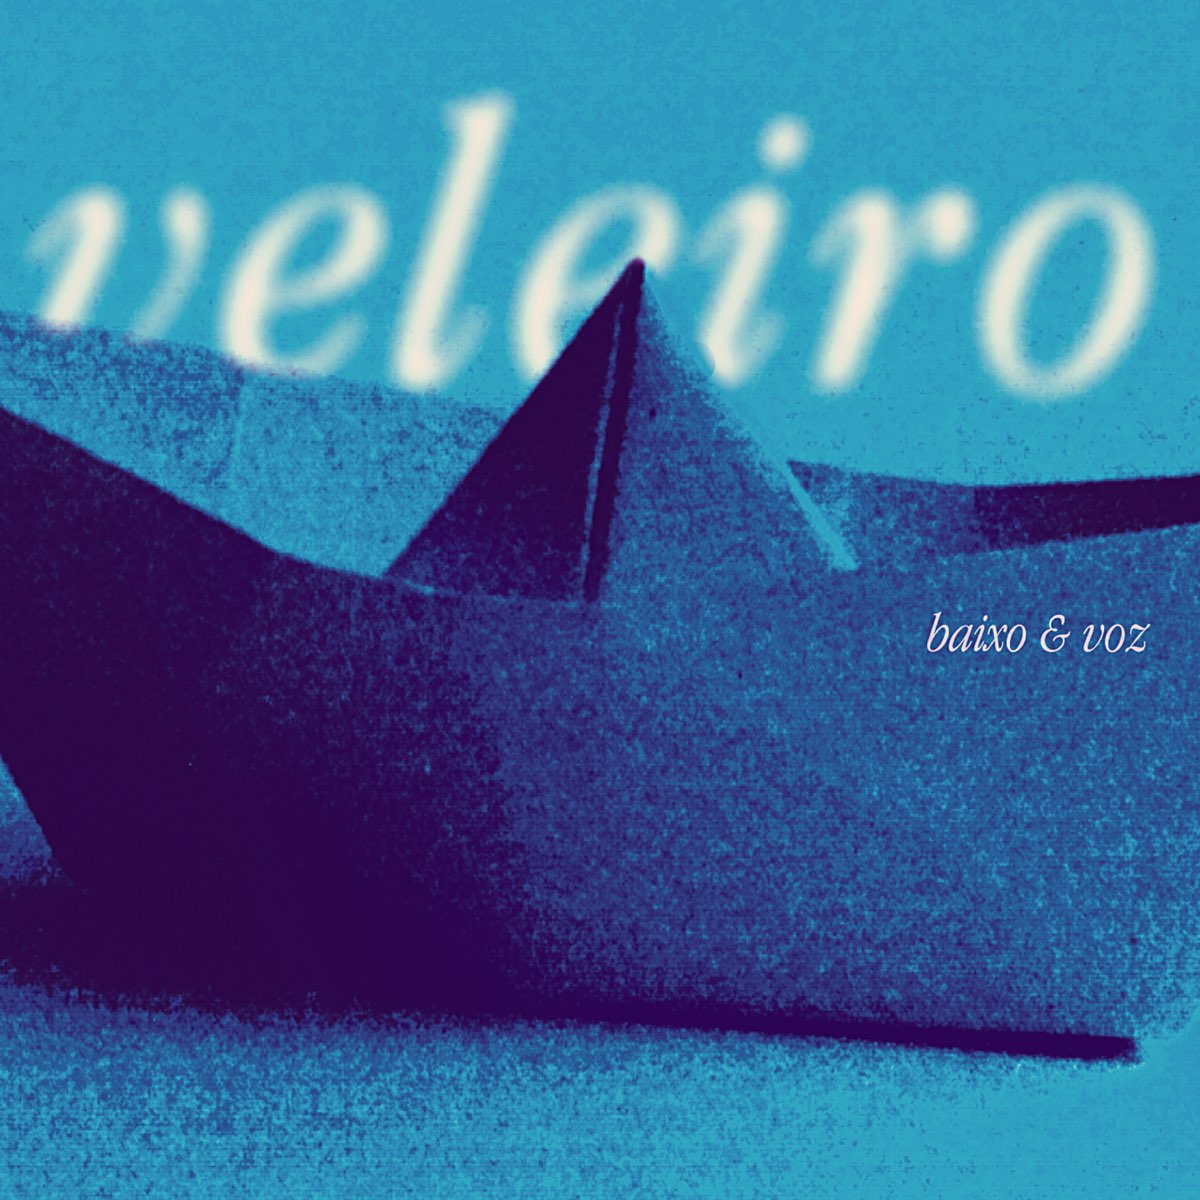 Veleiro by Baixo e Voz on Apple Music